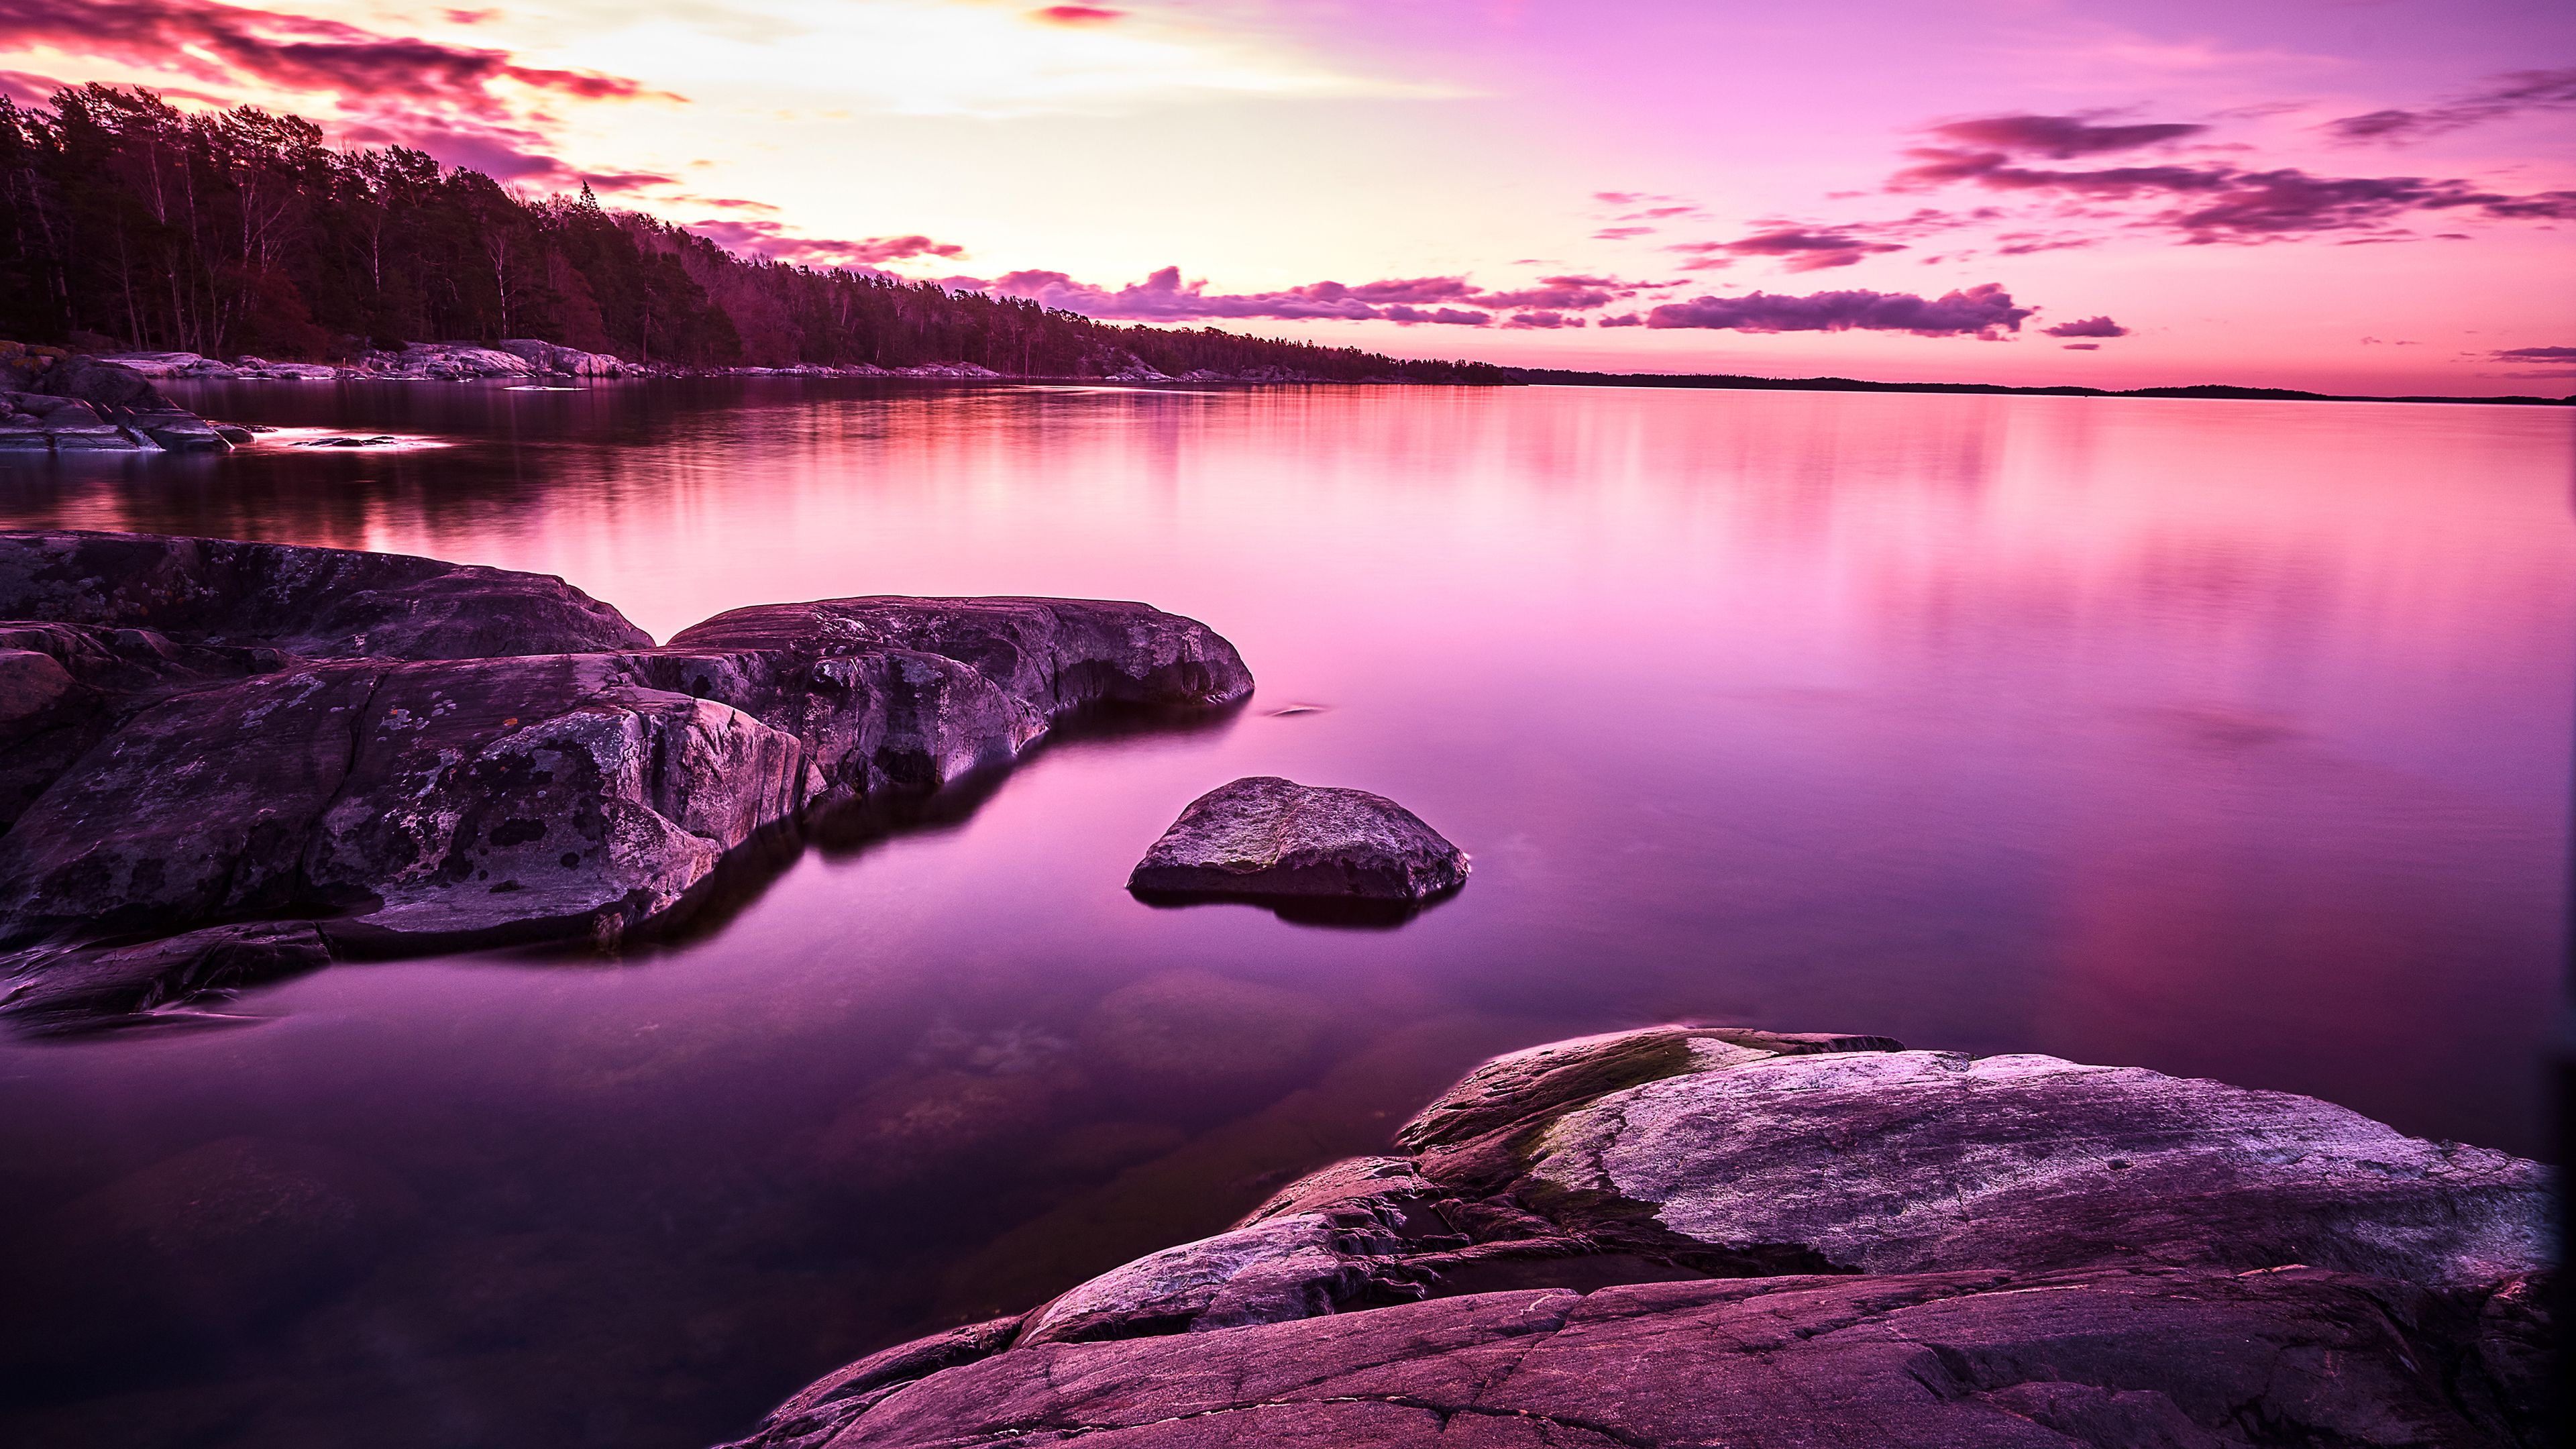 Sunset, Lake, Purple, Pink sky, Scenery, 4k Free deskk wallpaper, Ultra HD